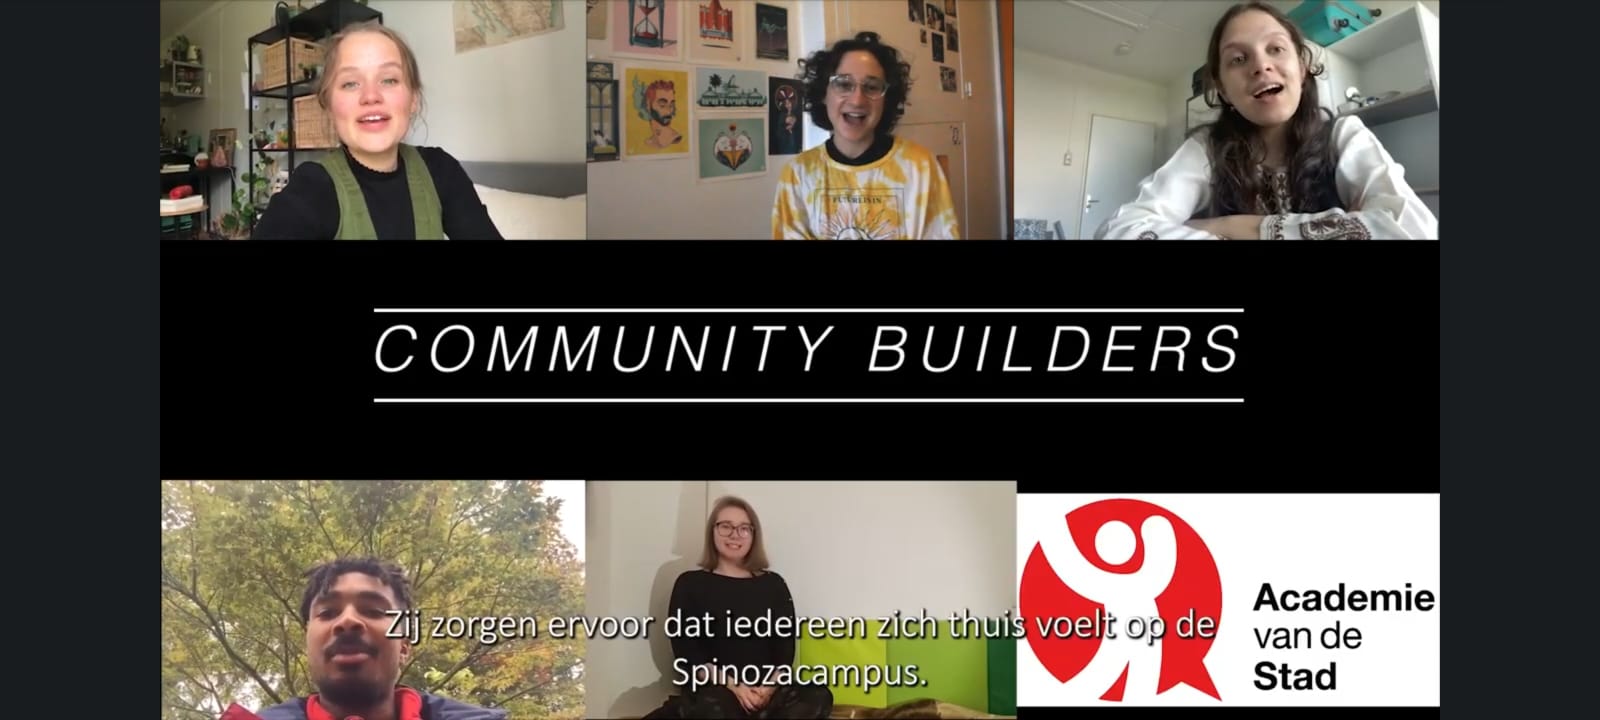 Ontmoet de Community Builders van de Spinozacampus!